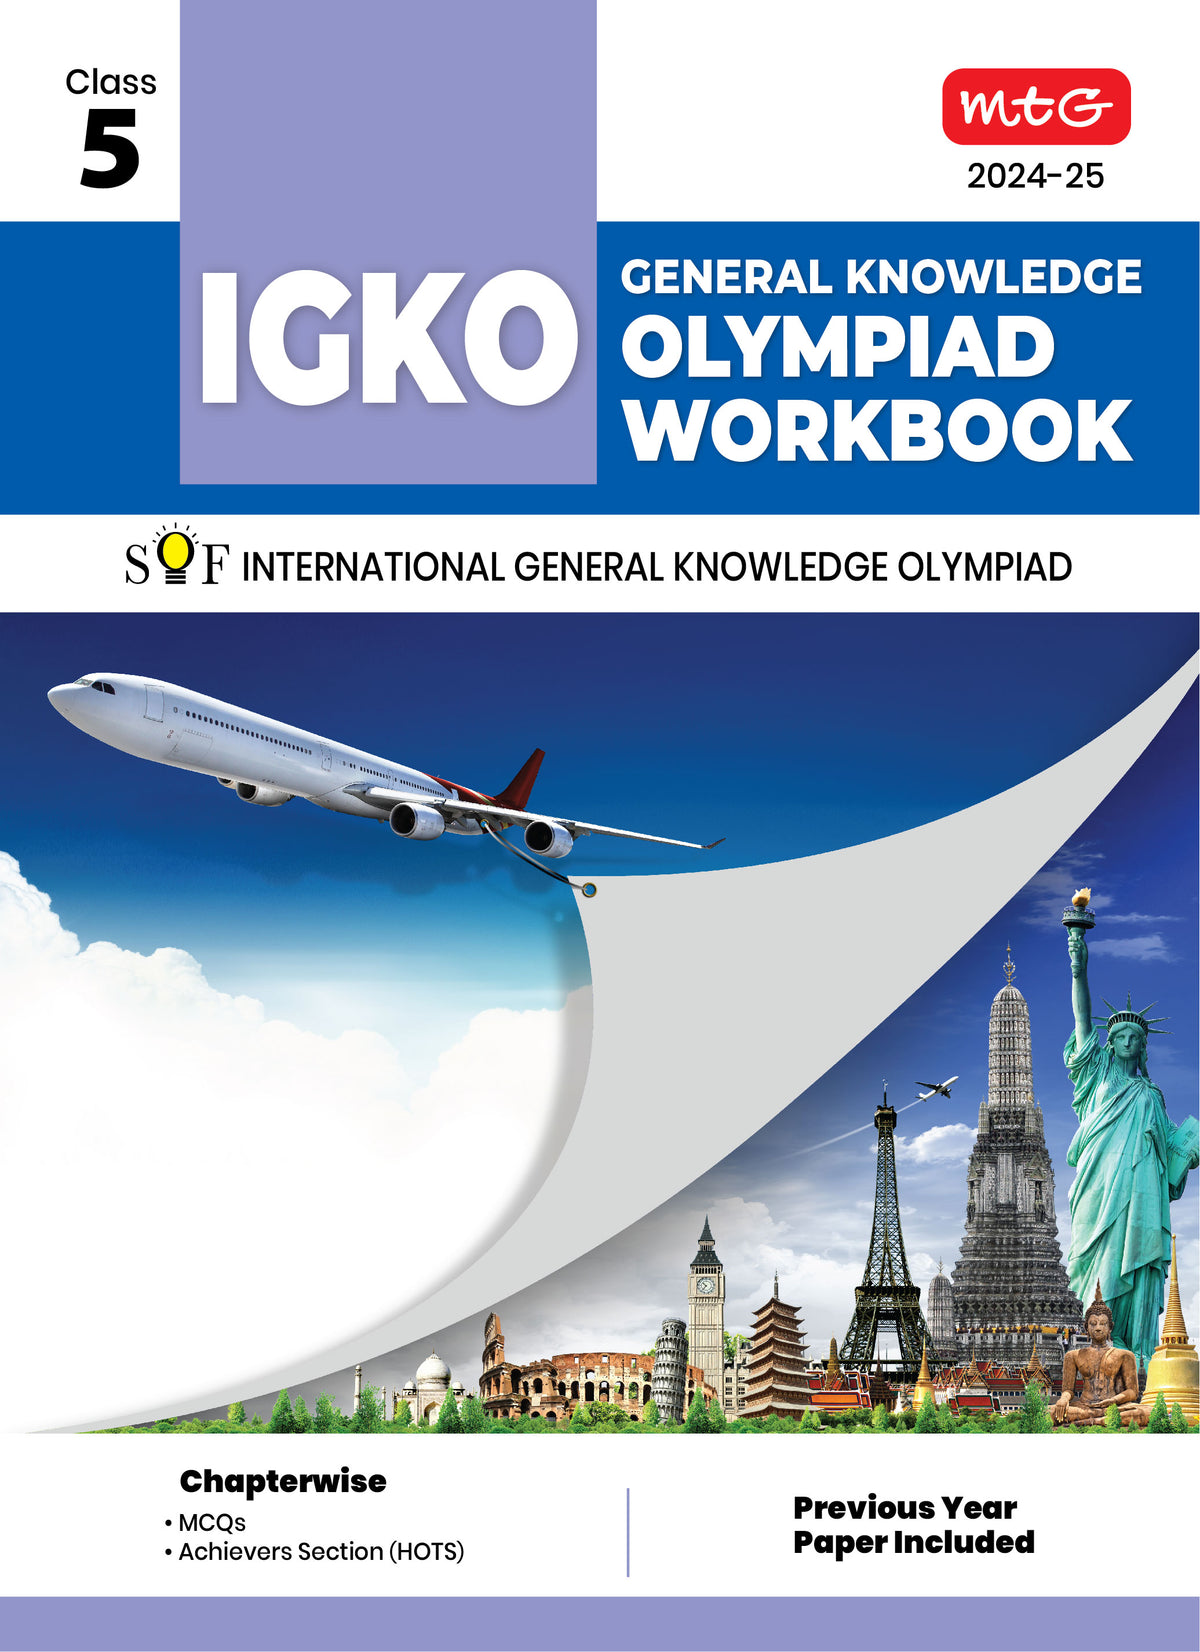 MTG GENERAL KNOWLEDGE OLYMPIAD WORKBOOK IGKO 5